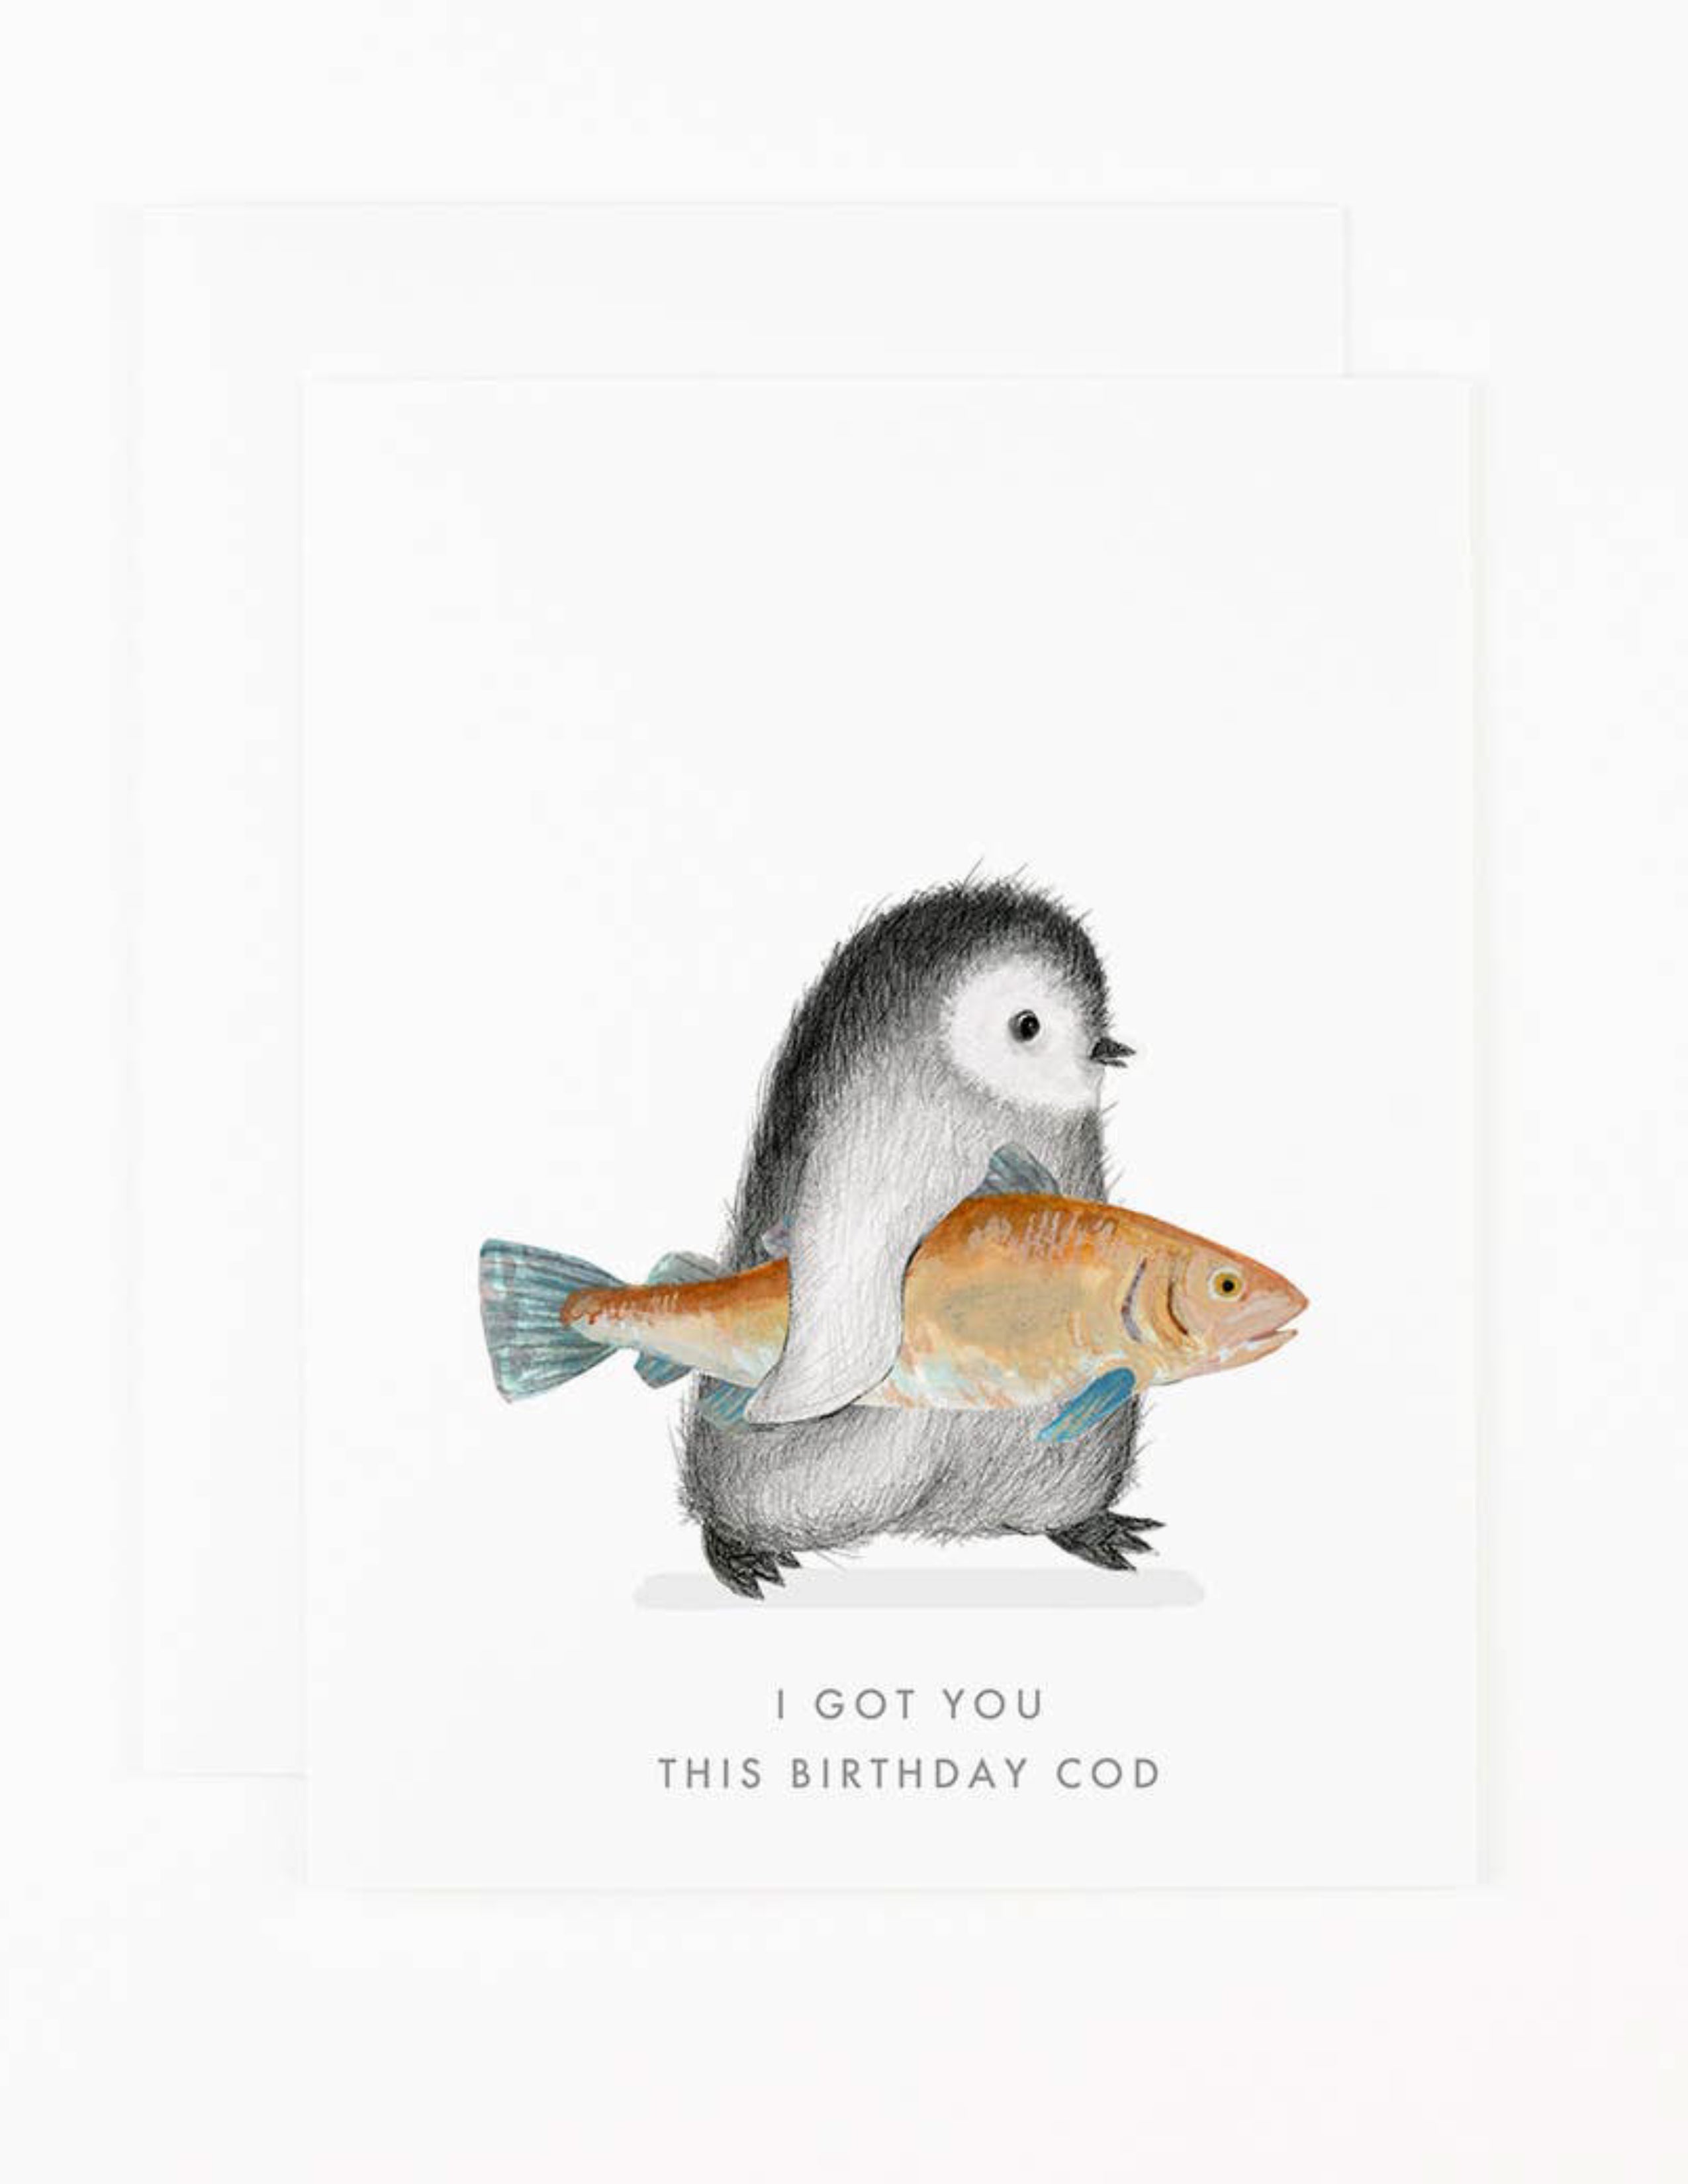 Birthday Cod